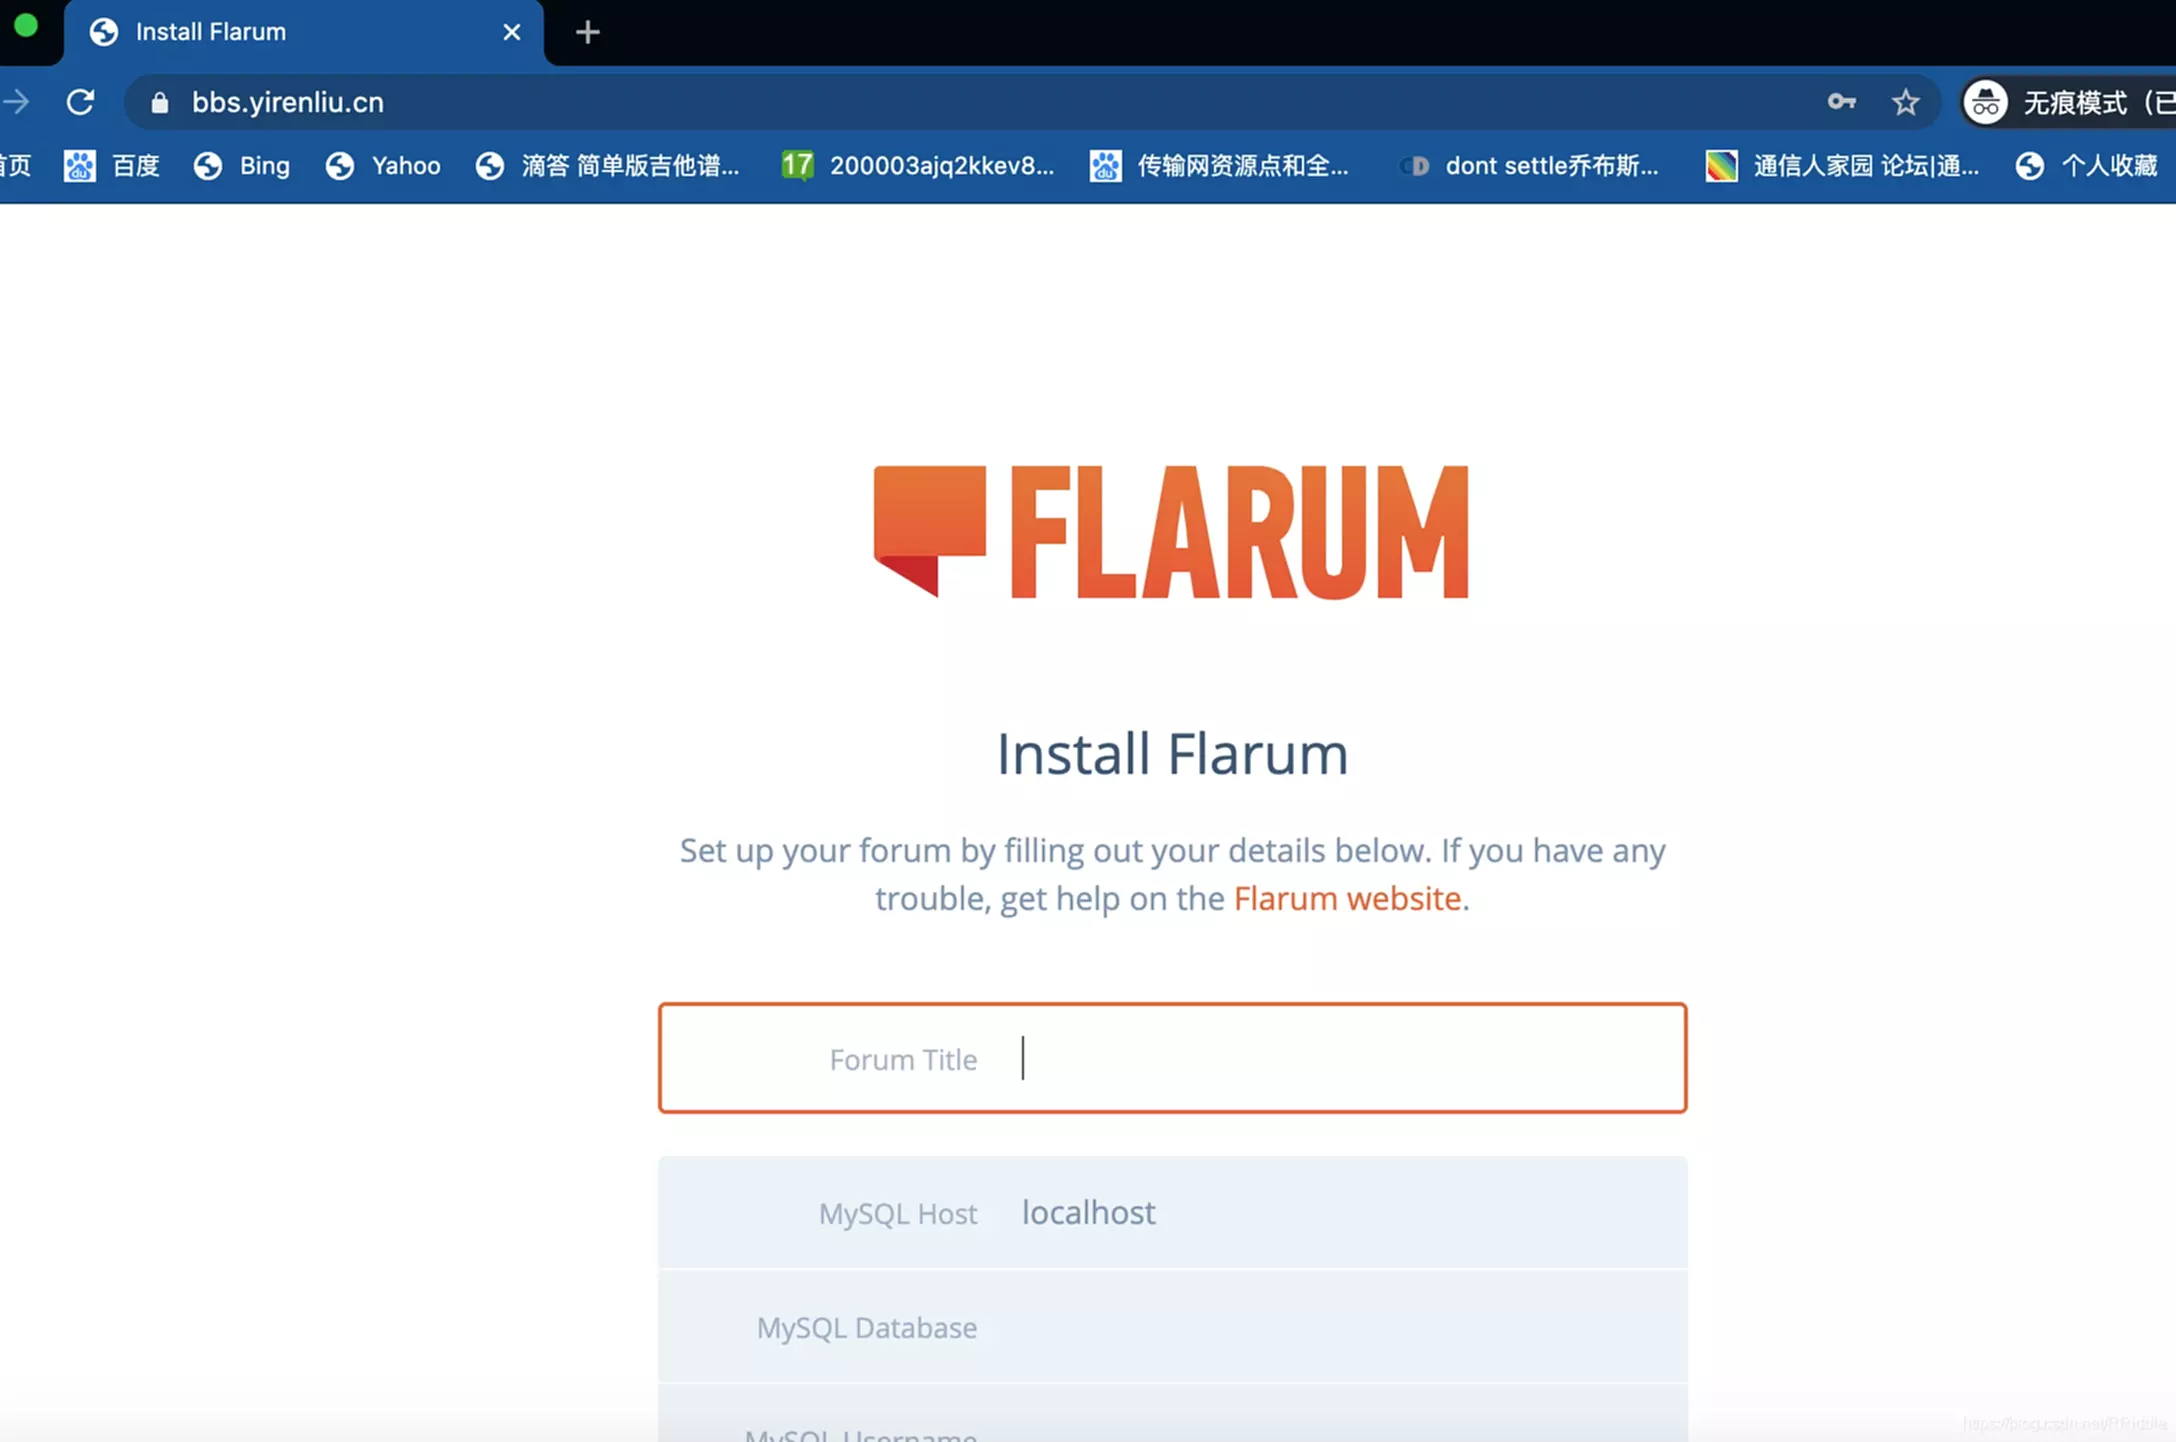 宝塔Linux面板安装简洁美观的Flarum论坛程序